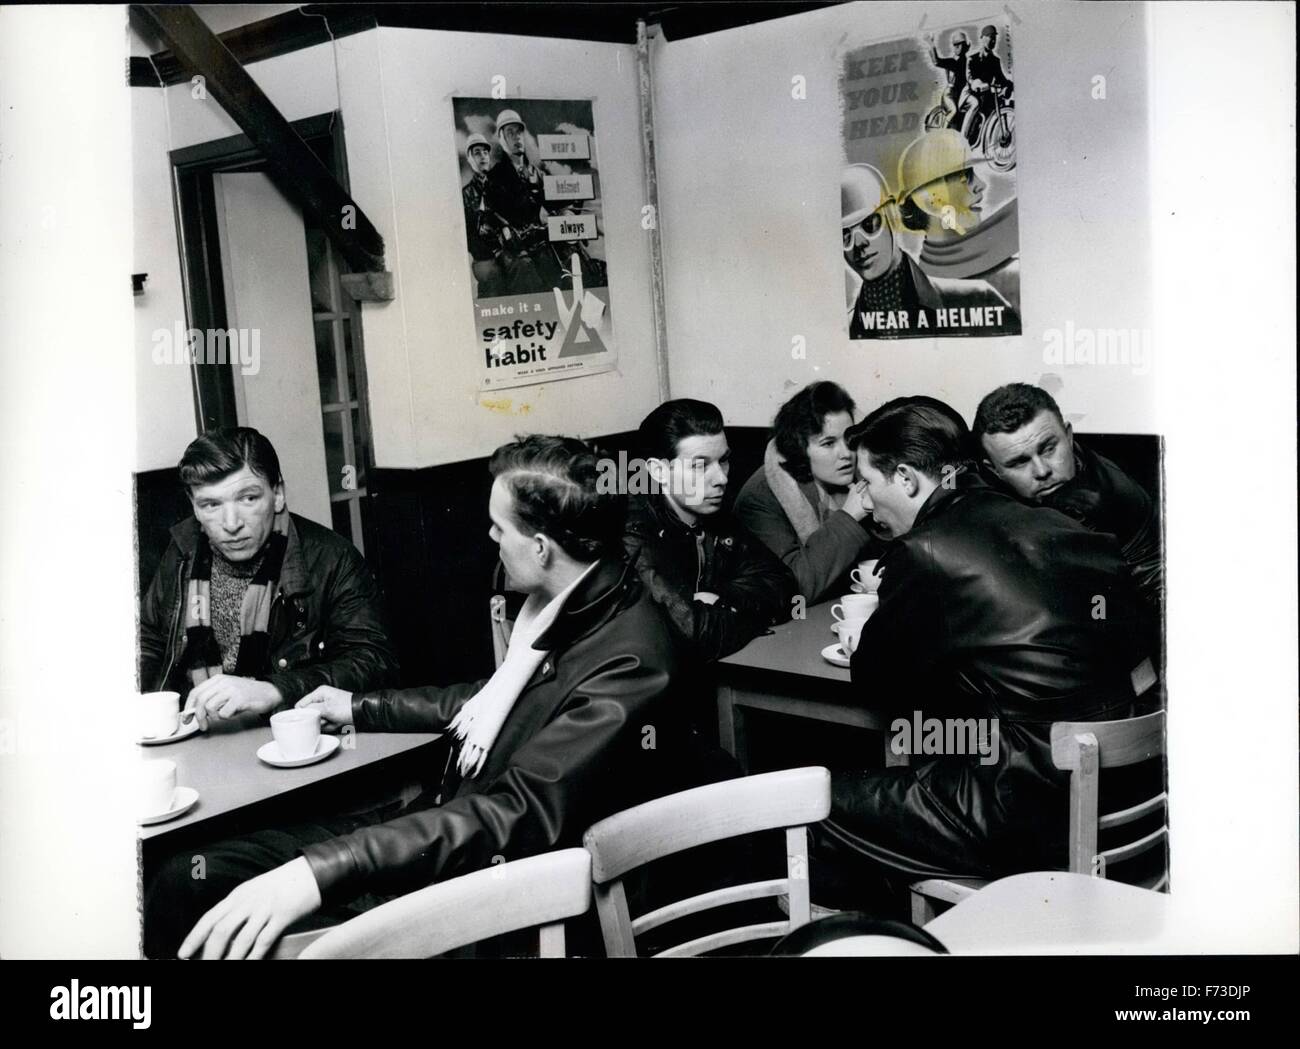 1954 - membre d'un gang de moto veste en cuir de graissage. Ironique : à l'intérieur du café après avoir été accélérant leurs machines parfois à la limite qu'ils s'asseoir et boire du thé ensemble affiches décorent les murs. © Keystone Photos USA/ZUMAPRESS.com/Alamy Live News Banque D'Images